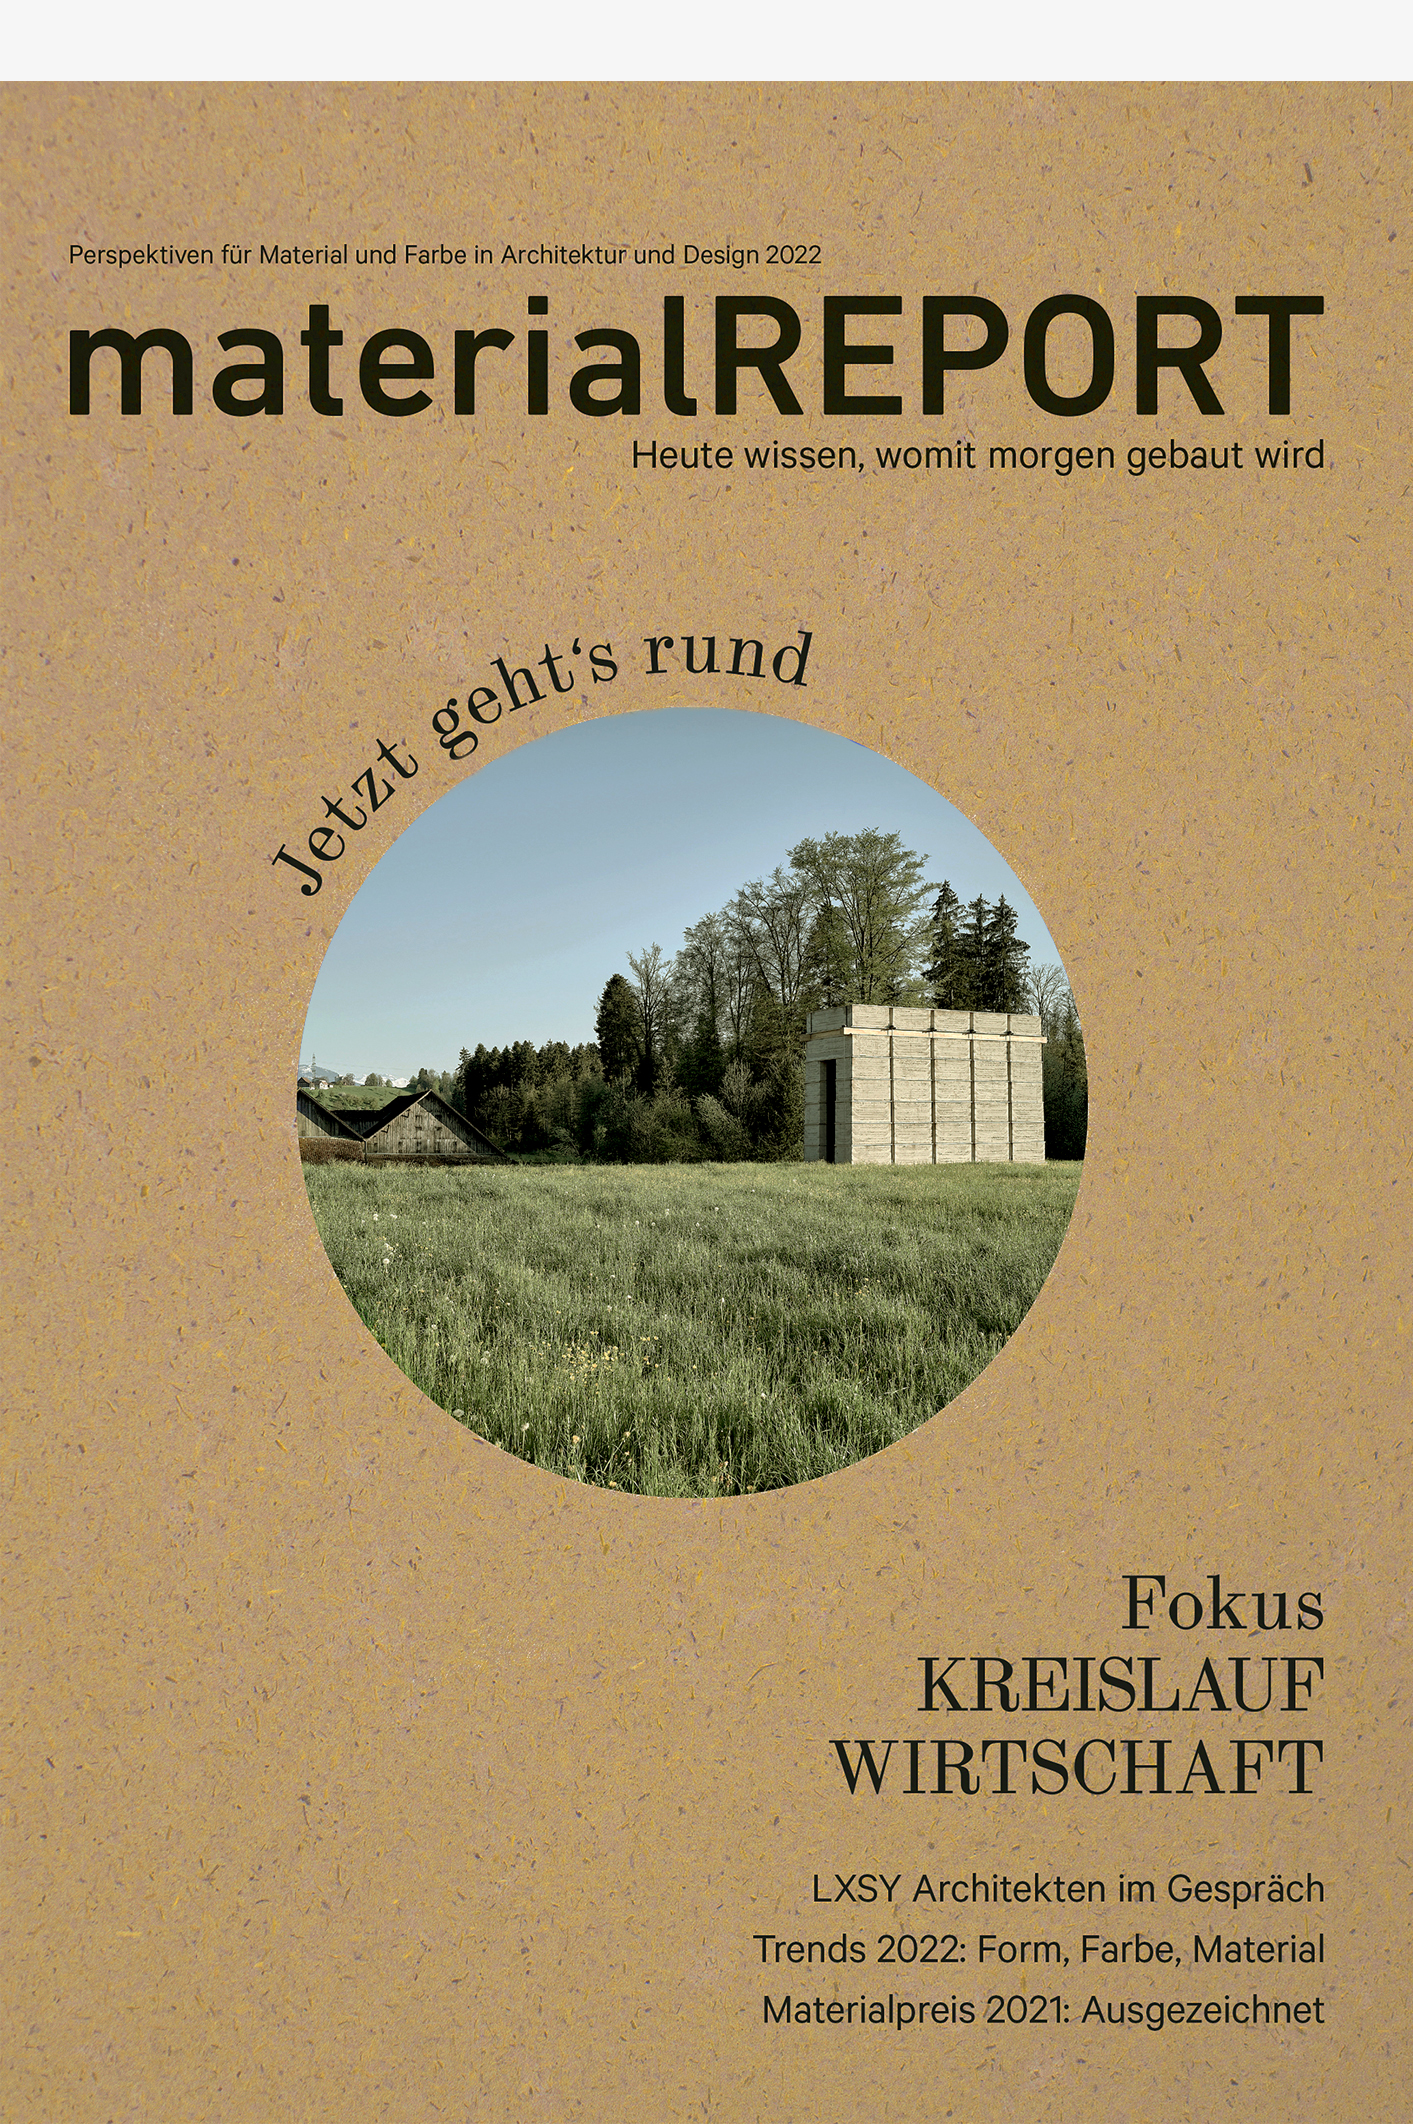 materialREPORT 2022 – Fokus Kreislaufwirtschaft